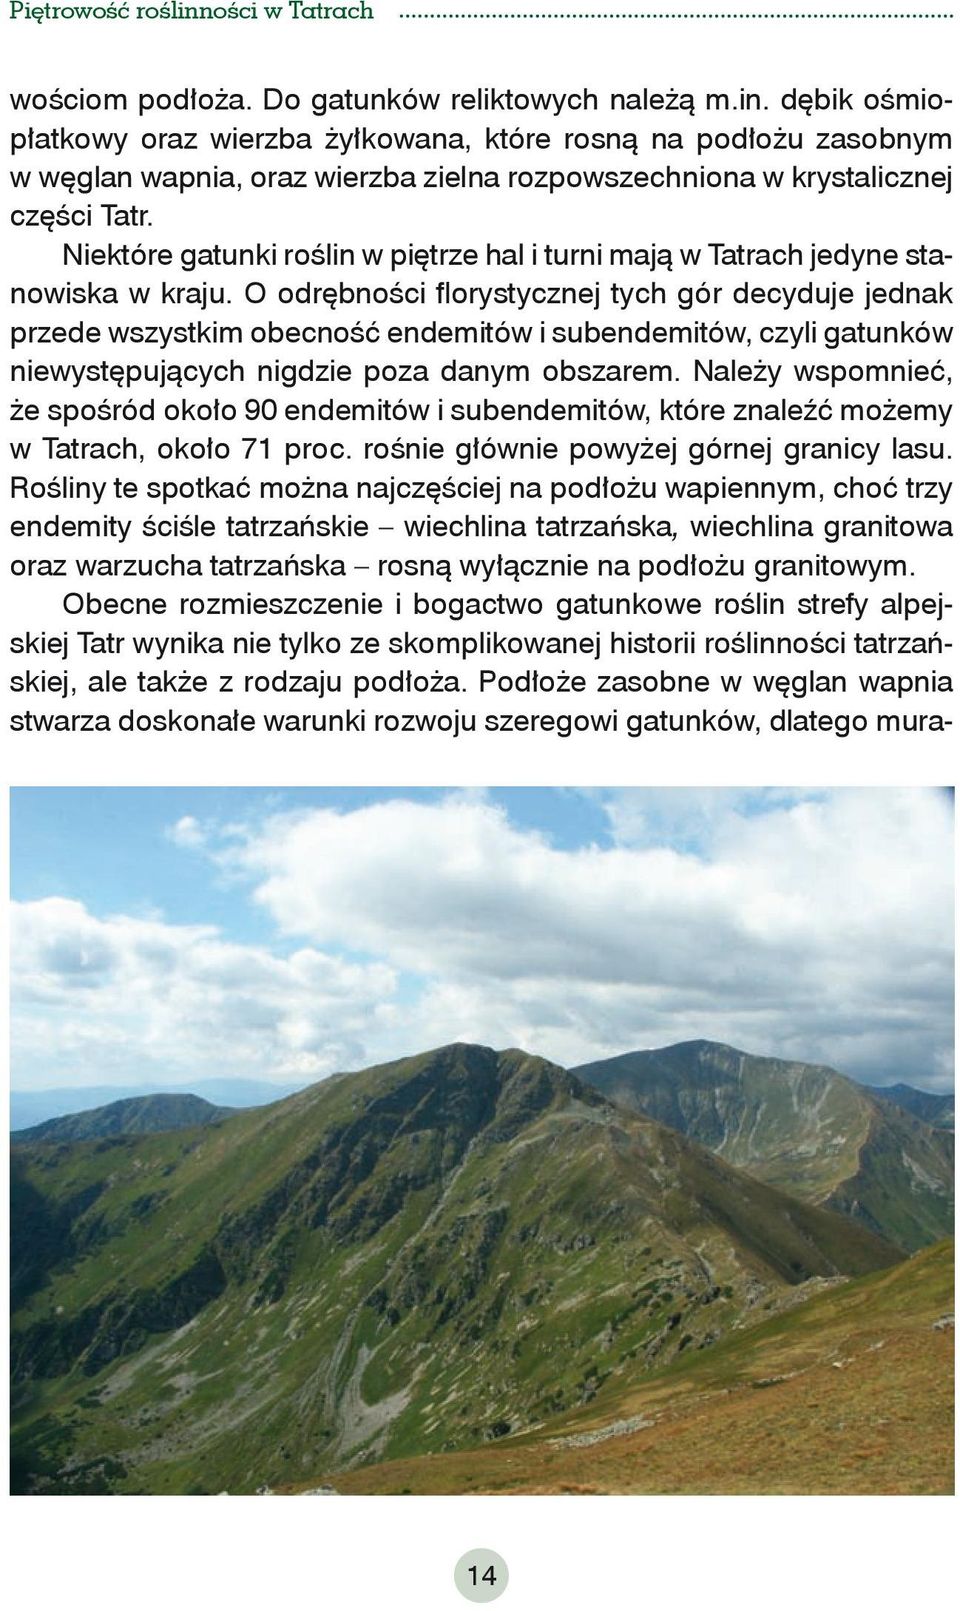 Niektóre gatunki roślin w piętrze hal i turni mają w Tatrach jedyne stanowiska w kraju.